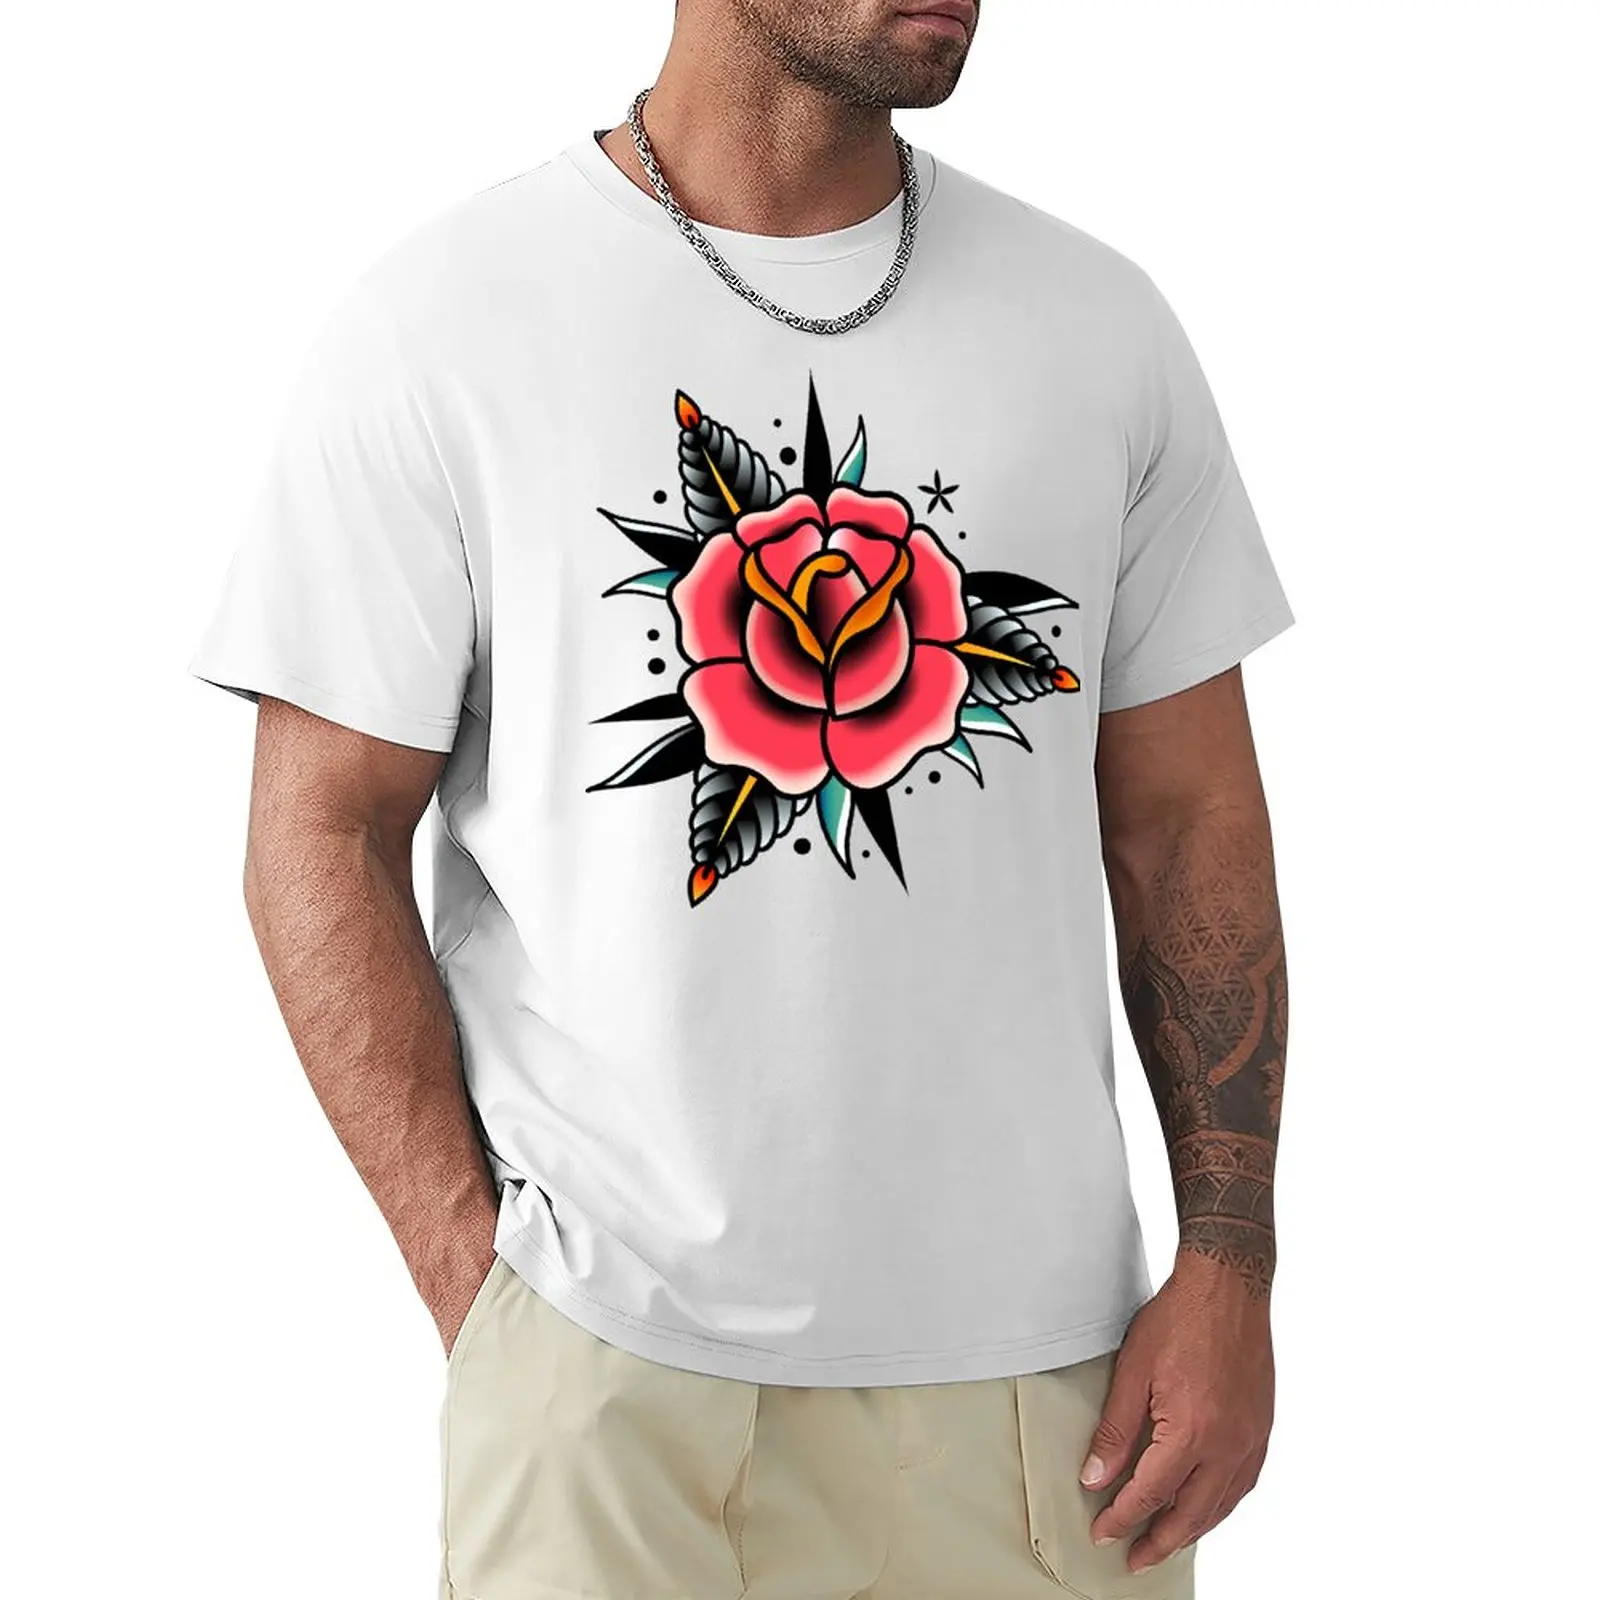 традиционная олдскульная футболка с татуировкой в виде розы, одежда из аниме, одежда хиппи, футболки на заказ, футболки оверсайз, футболки для мужчин, упаковка